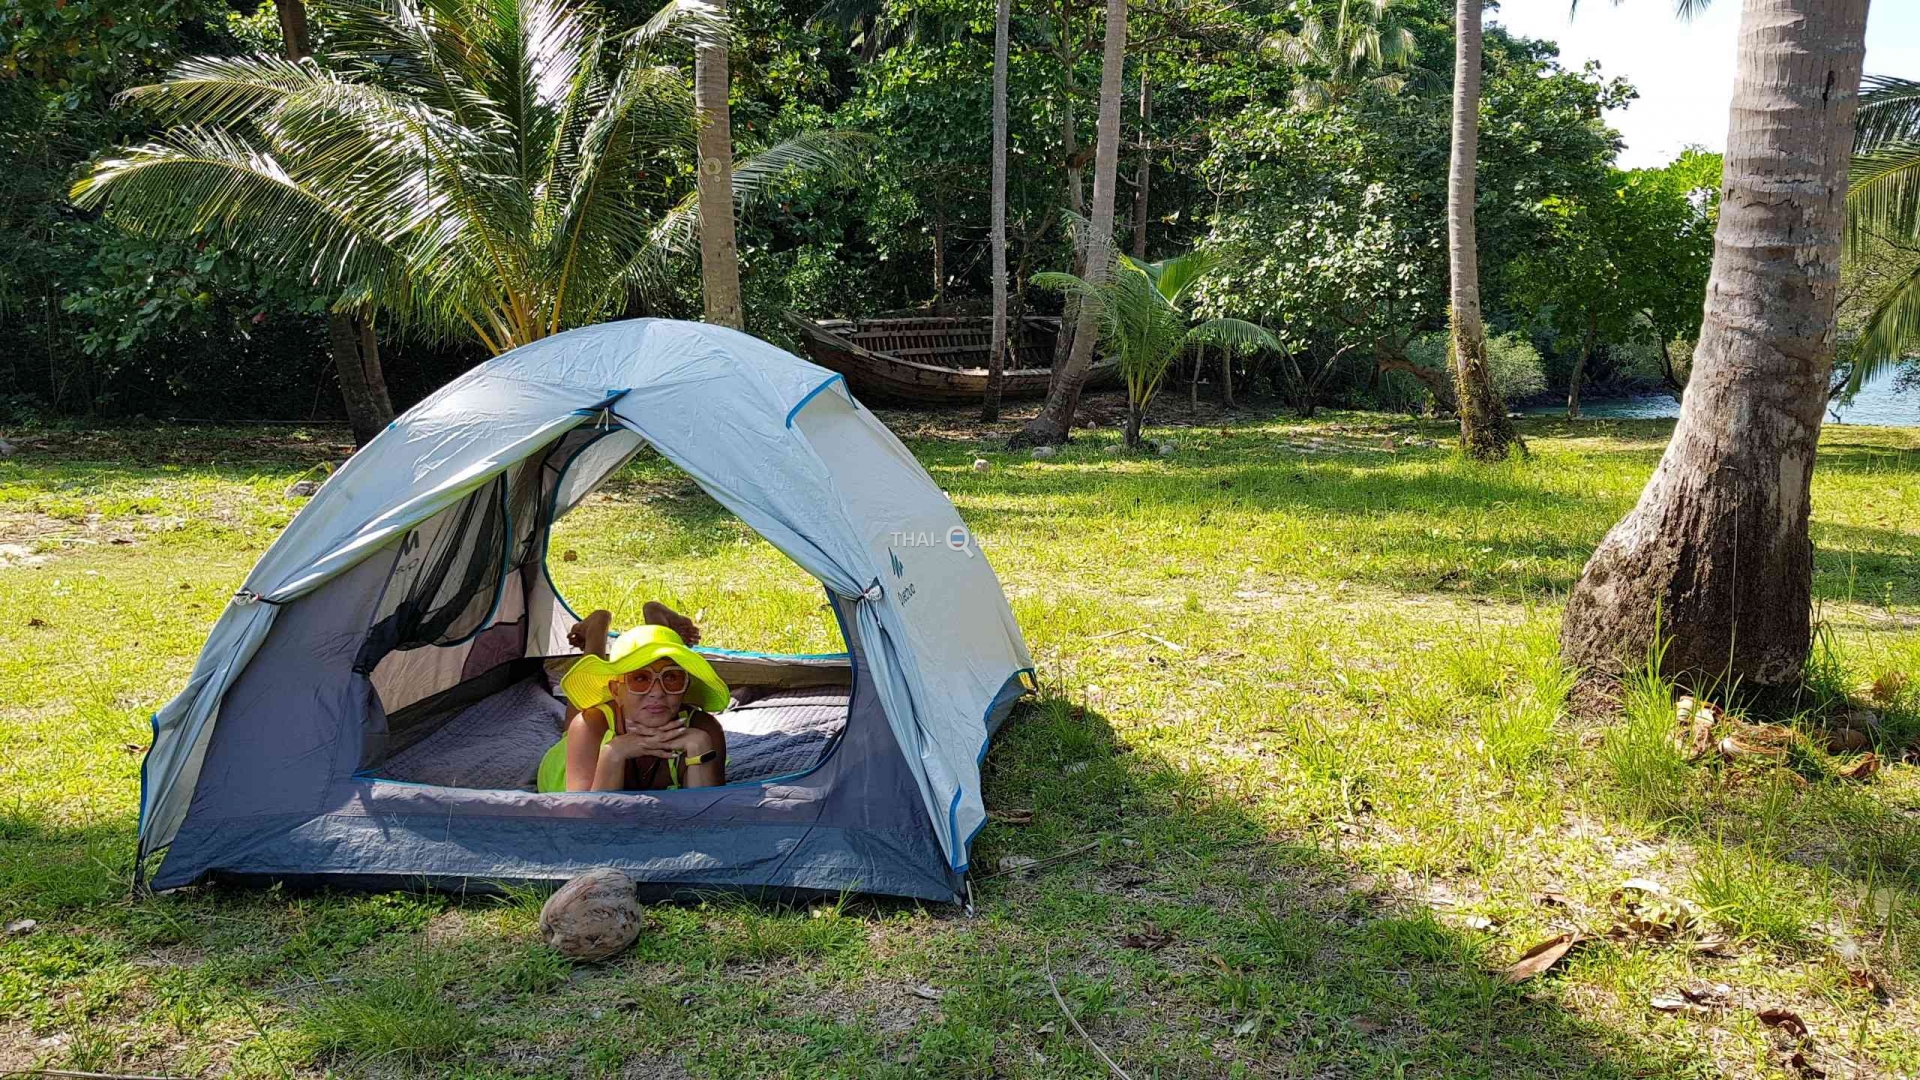 Цены на экскурсии по островам с ночевкой в палатке, Тайланд 2019 год и